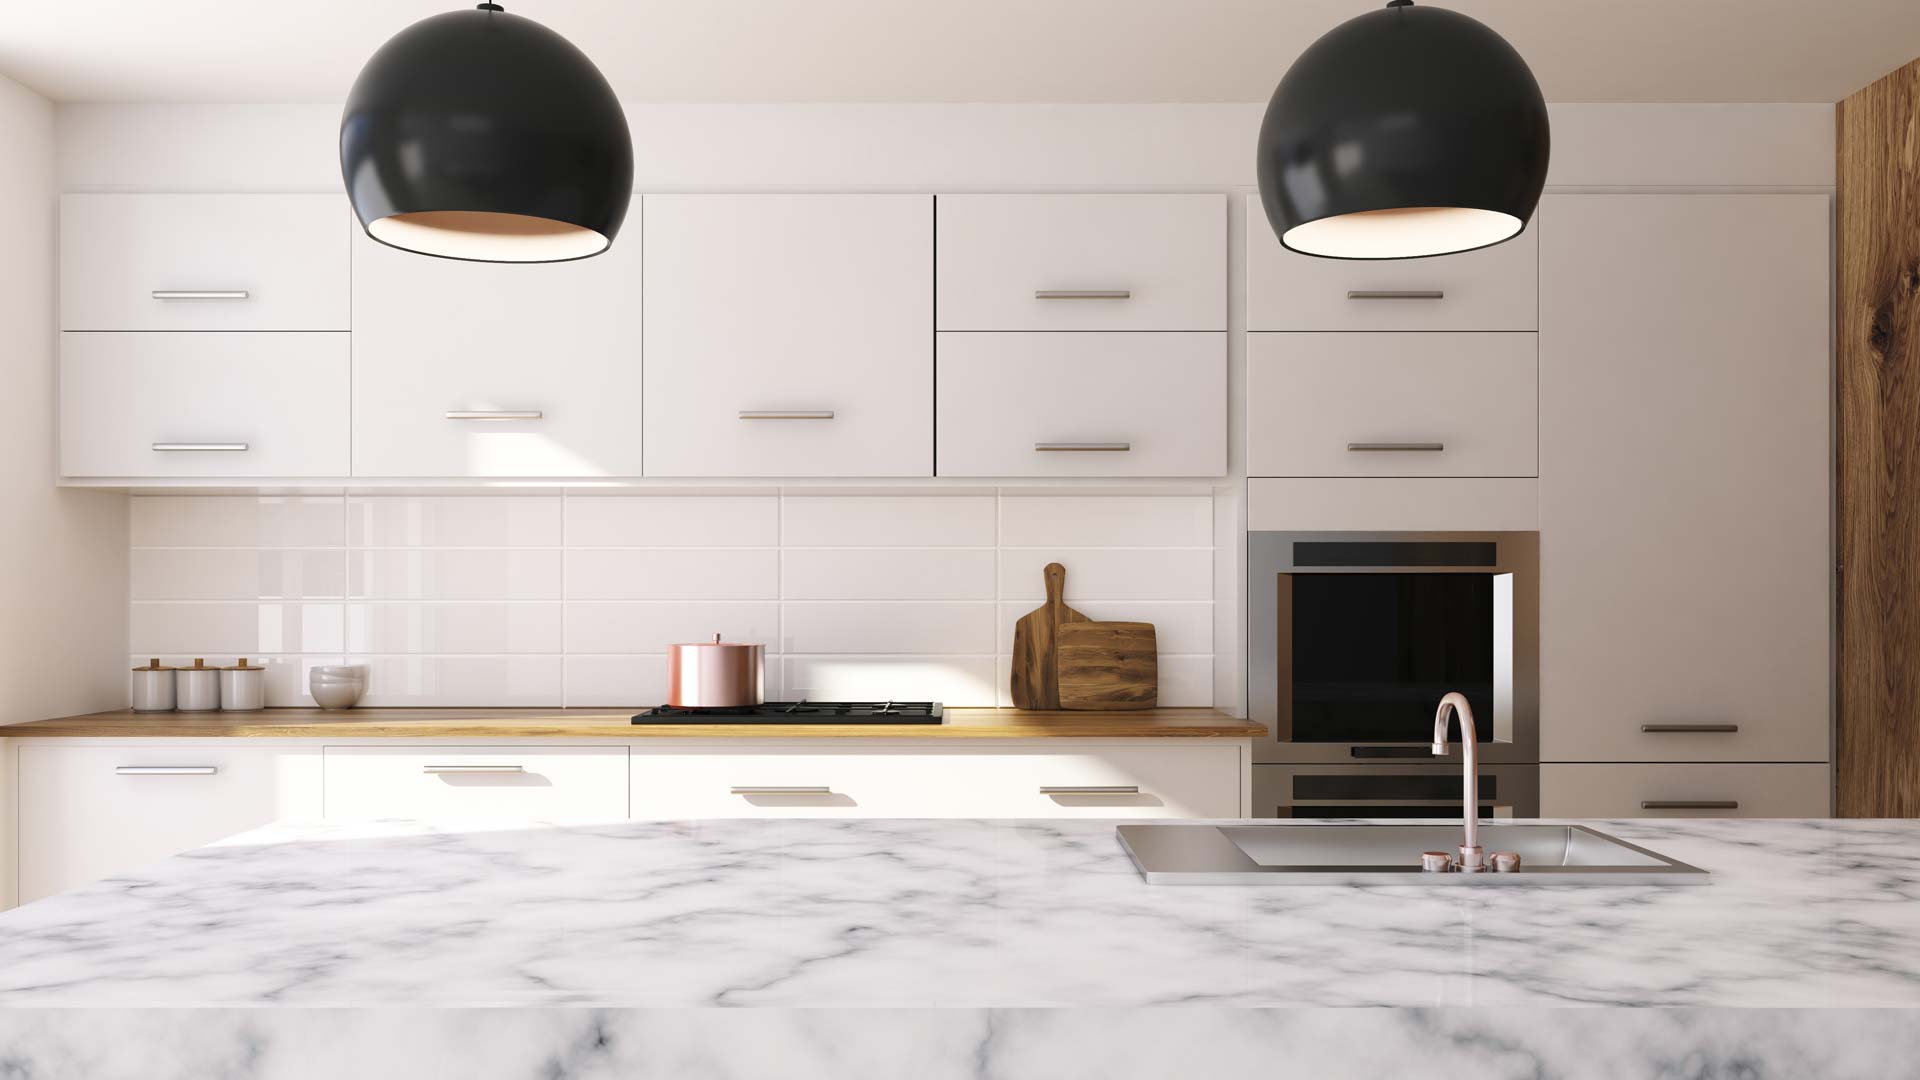 kitchen-home-interior-lights-counter-luxury-modern